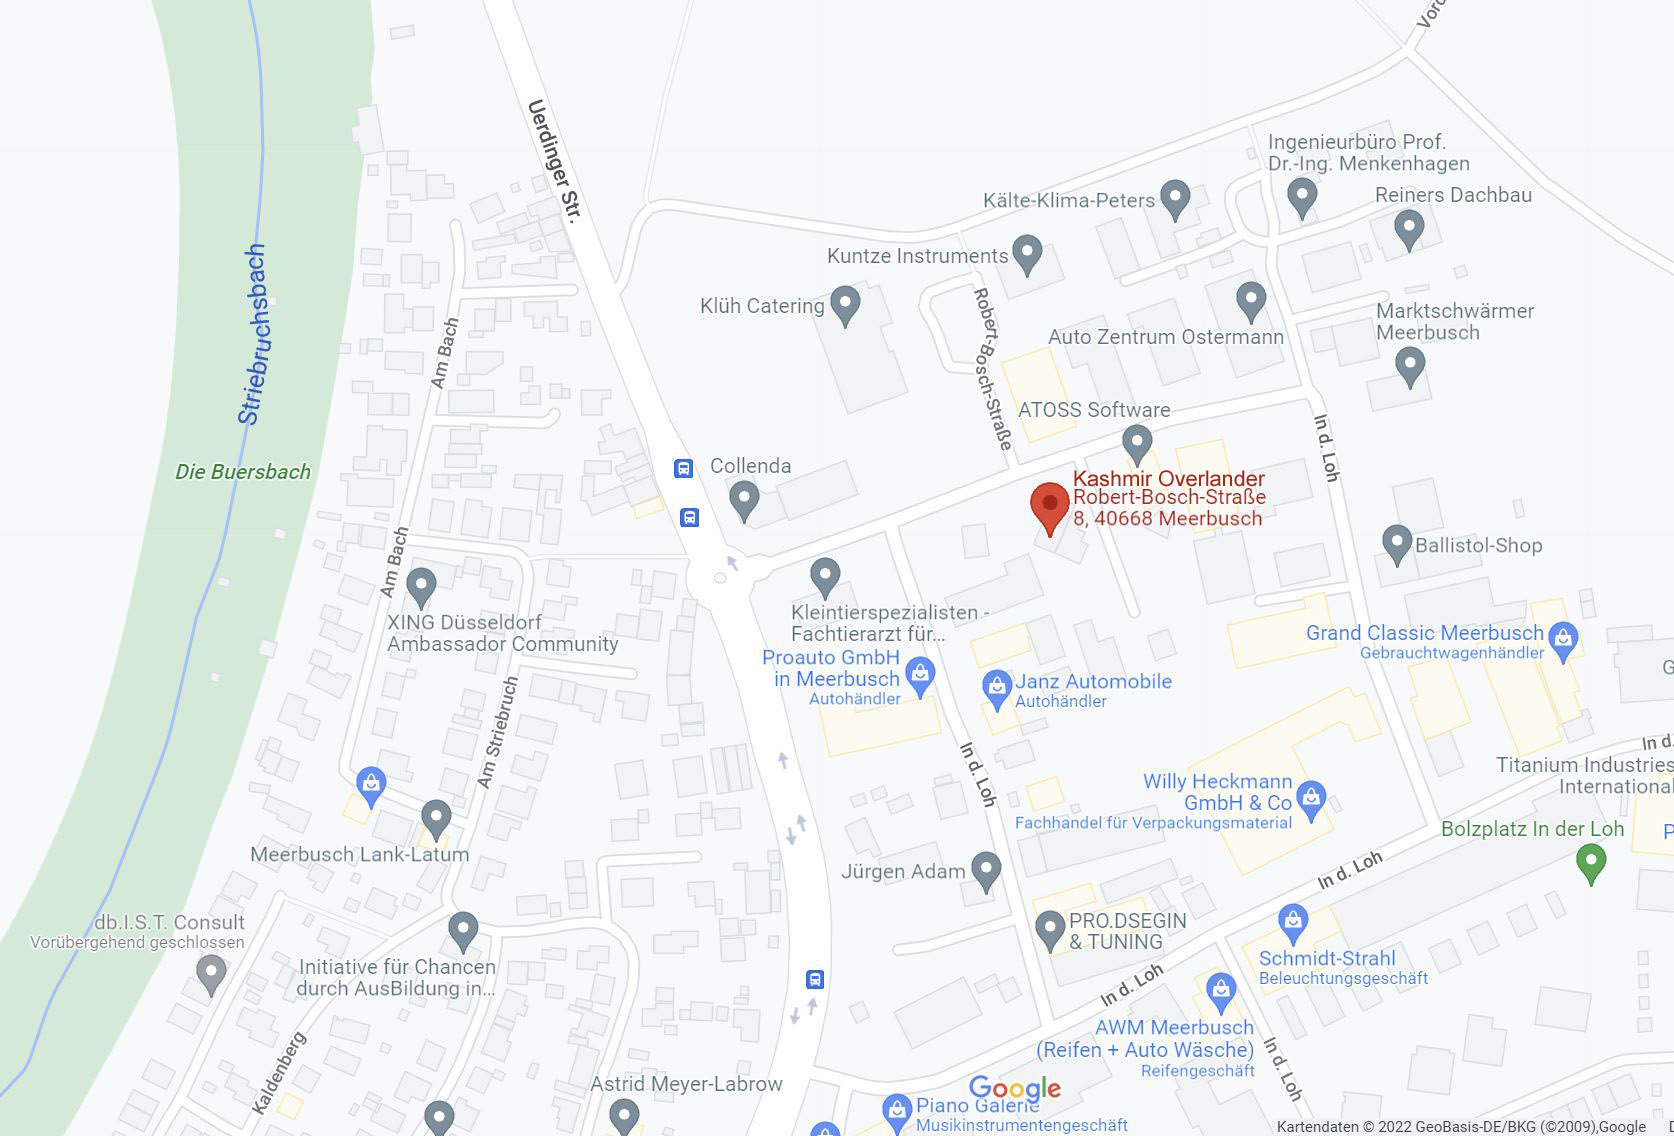 Google Maps Kashmir-Overlander